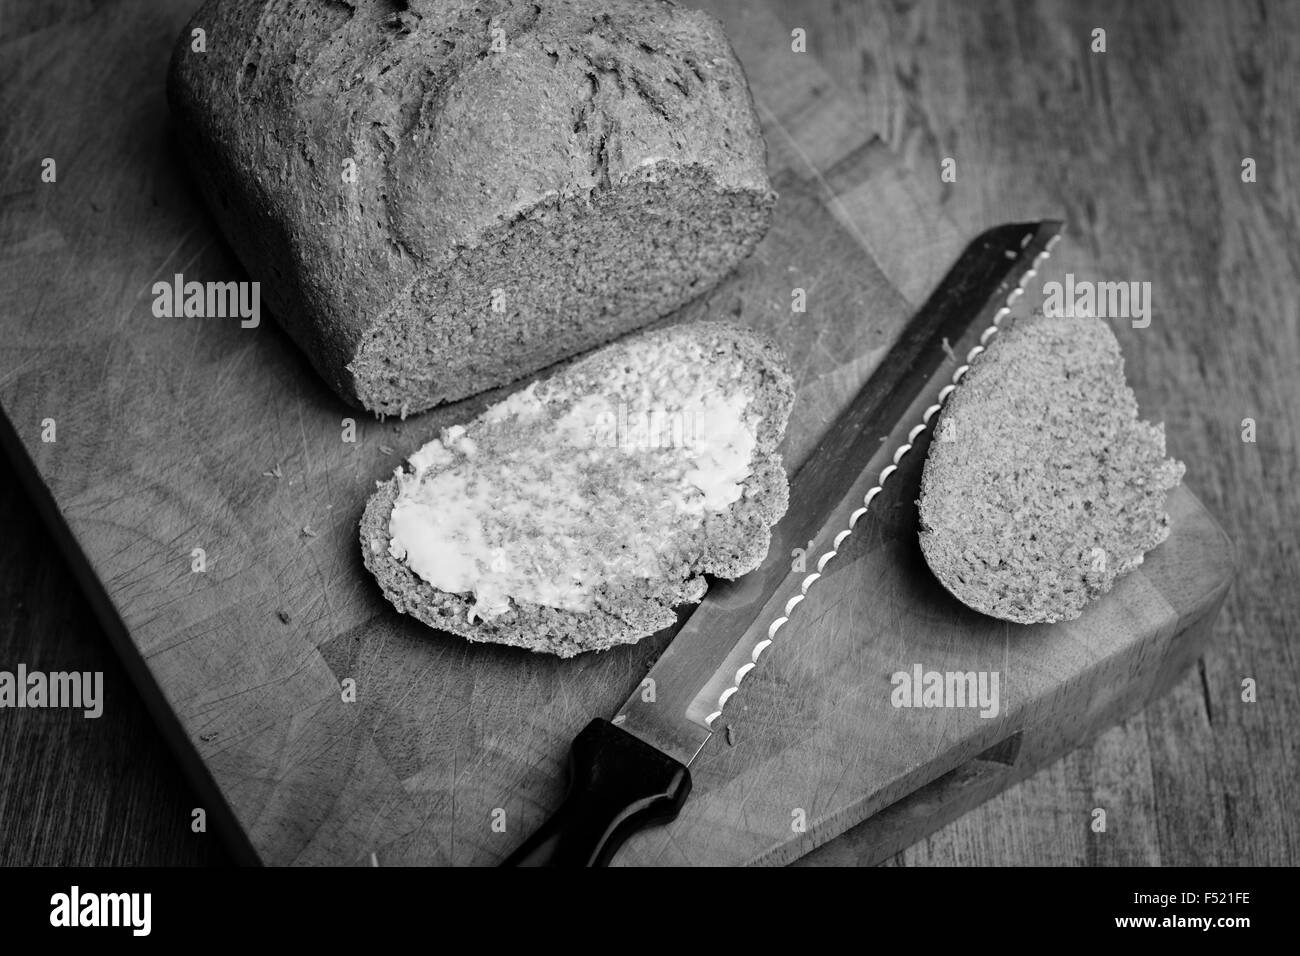 Miche de pain fraîchement cuit au four avec une tranche beurrée en noir et blanc Banque D'Images